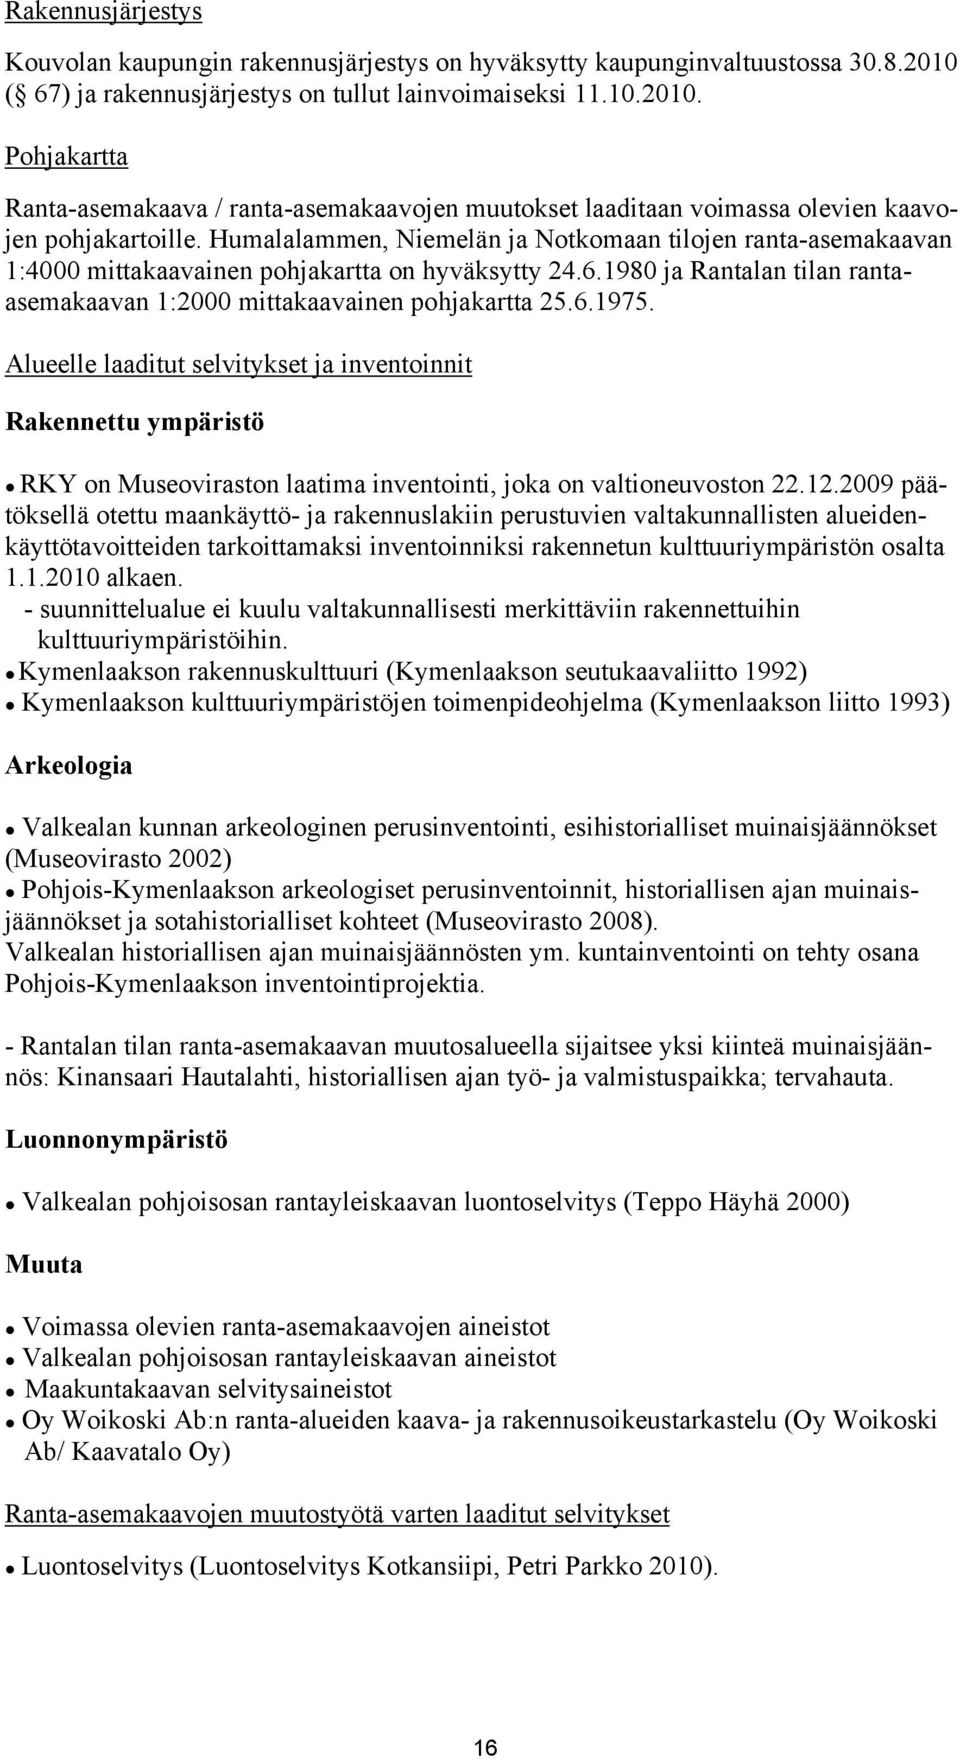 Humalalammen, Niemelän ja Notkomaan tilojen ranta-asemakaavan 1:4000 mittakaavainen pohjakartta on hyväksytty 24.6.1980 ja Rantalan tilan rantaasemakaavan 1:2000 mittakaavainen pohjakartta 25.6.1975.